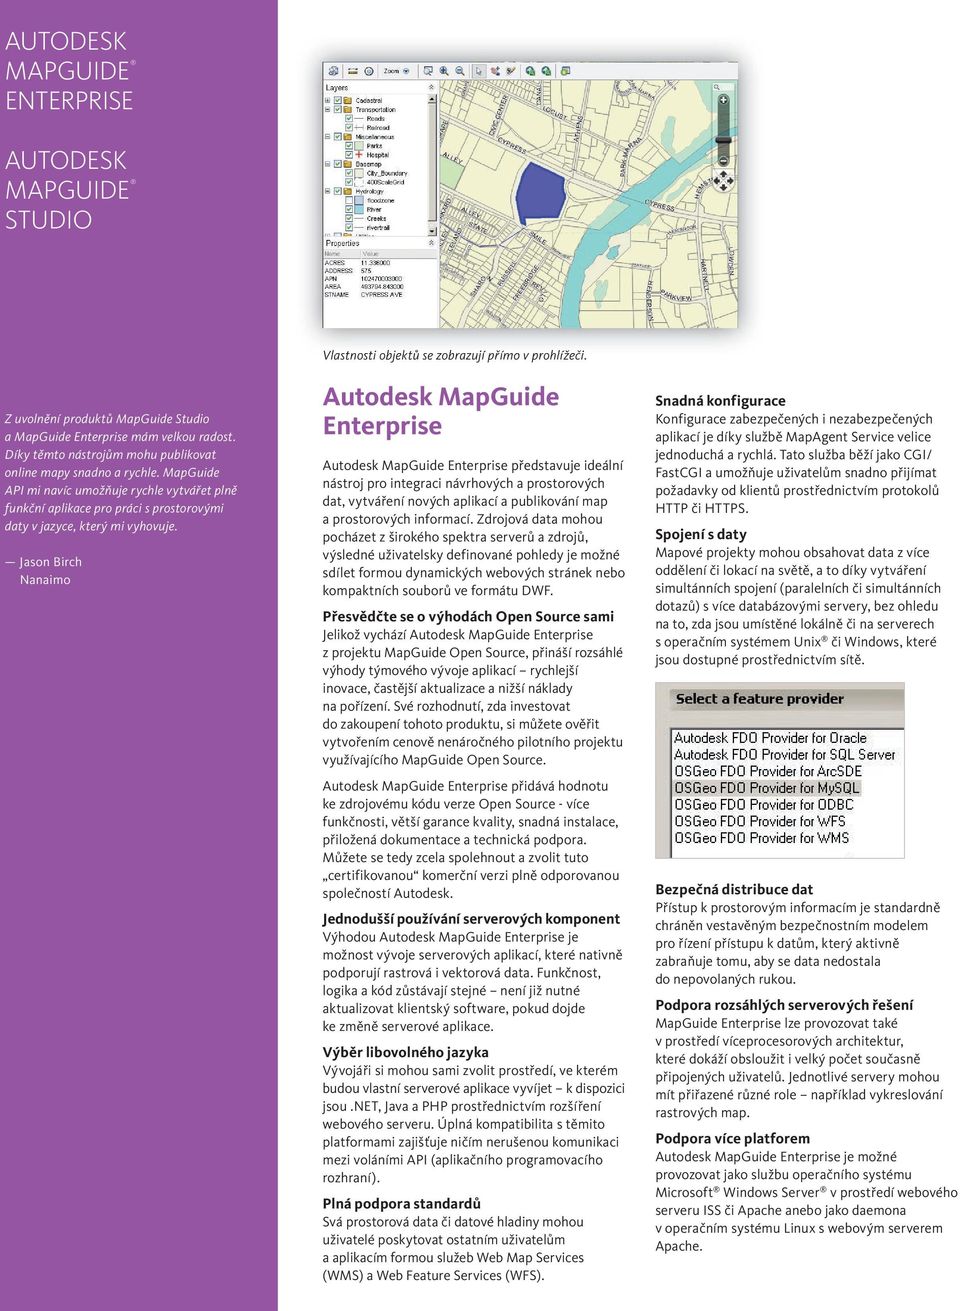 Autodesk MapGuide Enterprise Autodesk MapGuide Enterprise představuje ideální nástroj pro integraci návrhových a prostorových dat, vytváření nových aplikací a publikování map a prostorových informací.